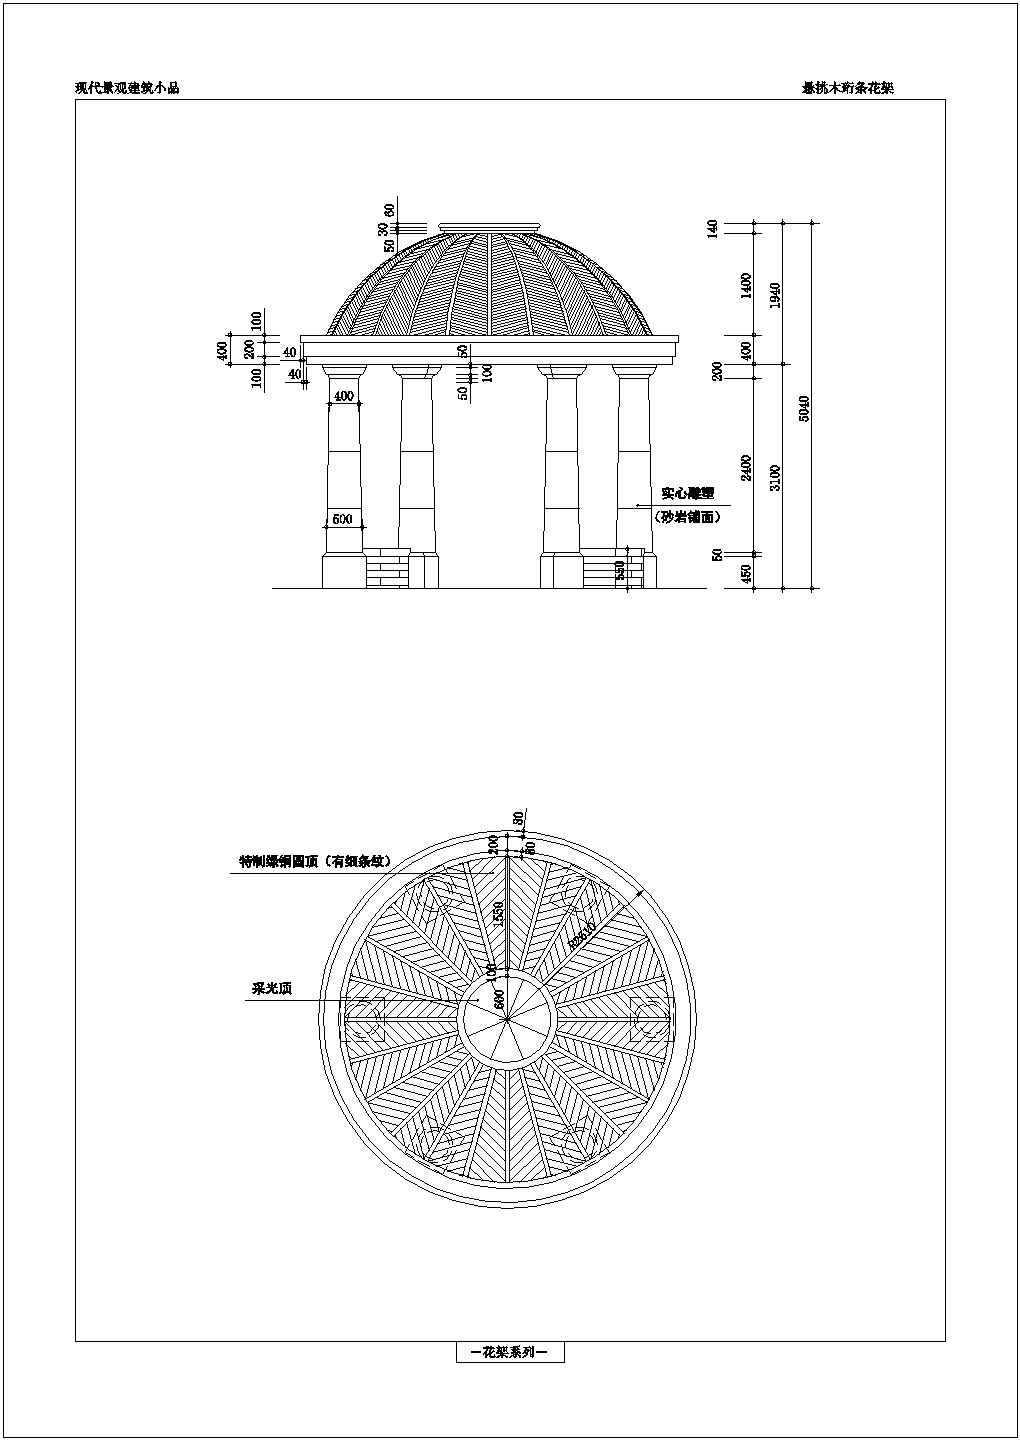 简欧式六柱圆顶景观园林休闲亭施工图